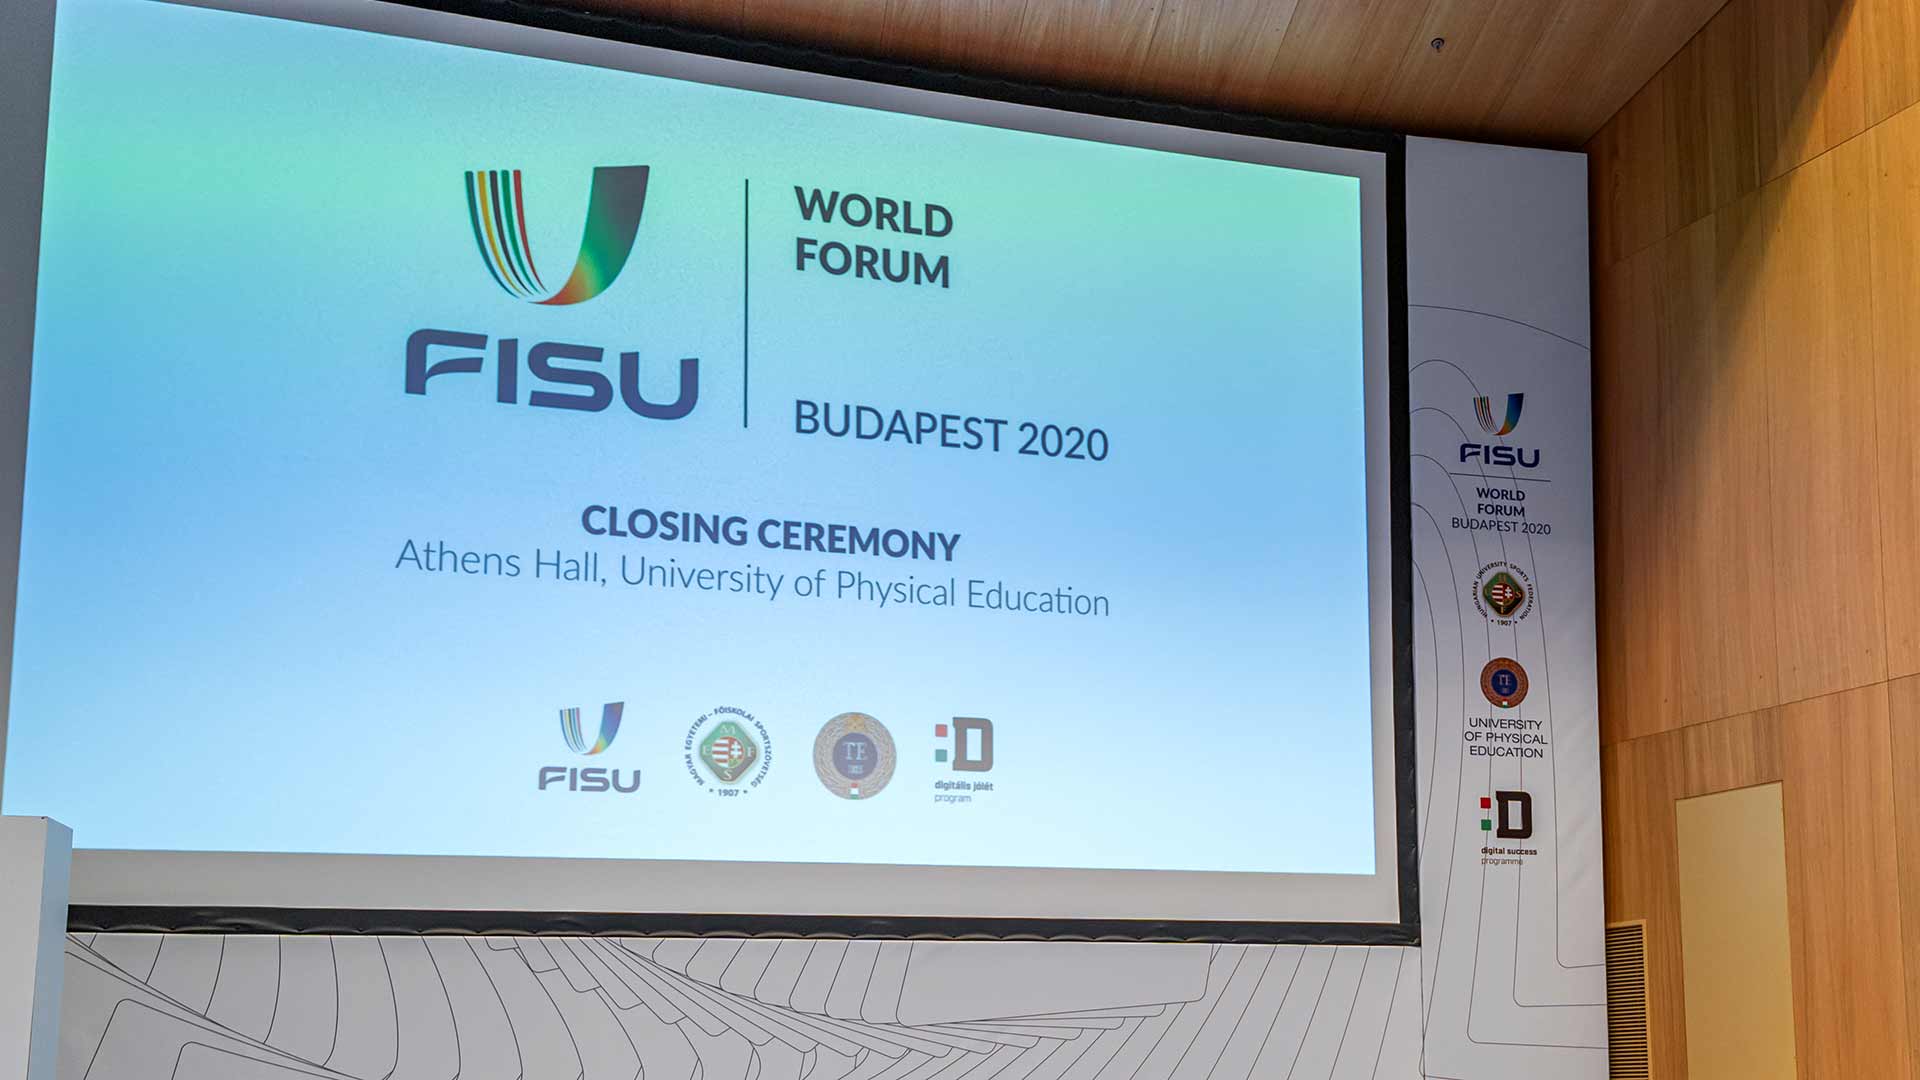 2020 FISU World Forum ends in Budapest